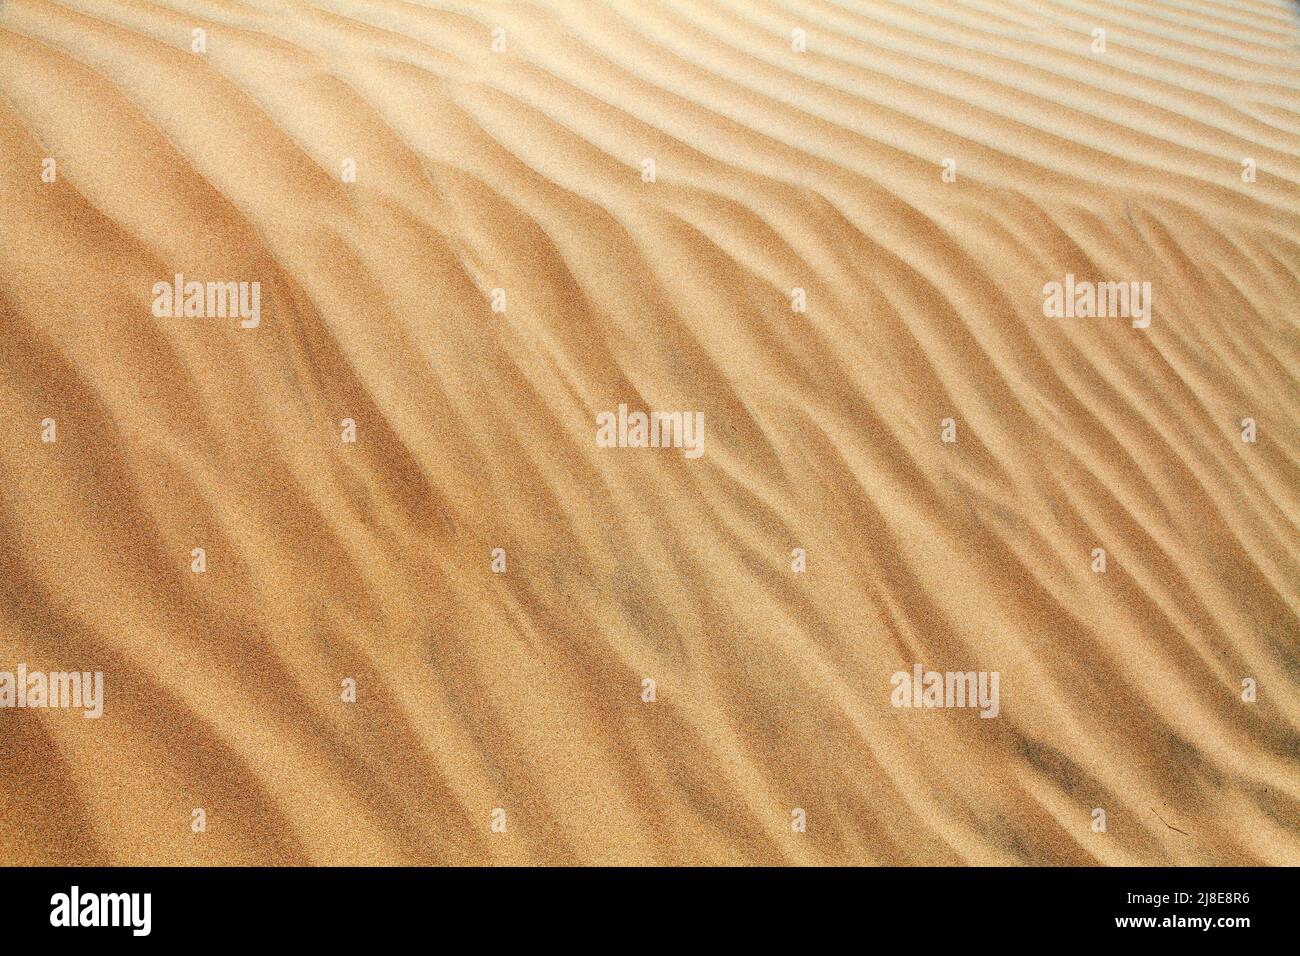 Wüstensanddünen, Sandwellen auf Cerro Blanco Sanddüne, die höchsten Dünen der Welt, in der Nähe von Nasca oder Nazca Stadt in Peru Stockfoto